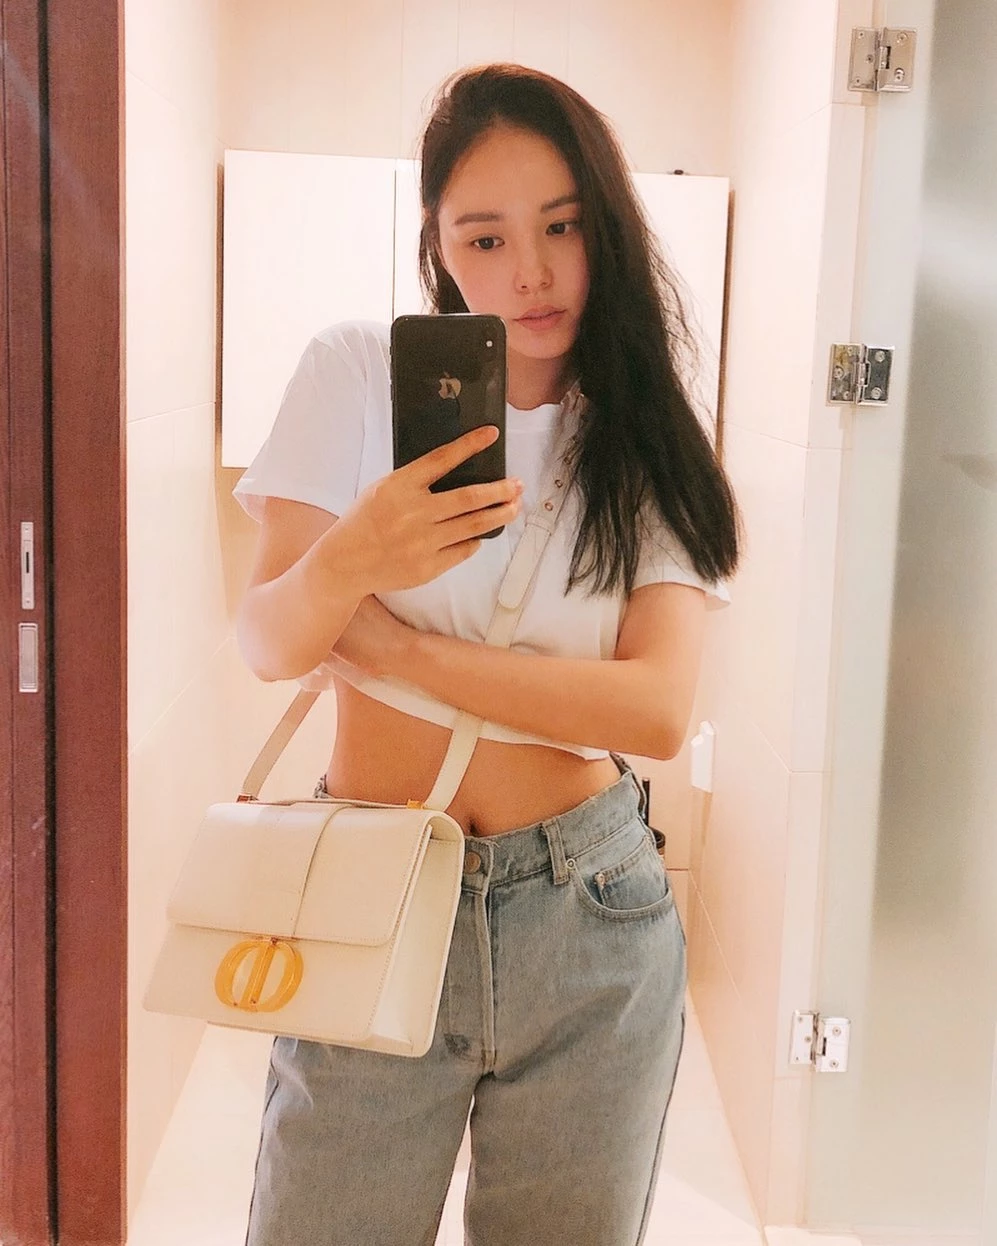 Мин Хе Рин обновила Instagram впервые за 4 месяца